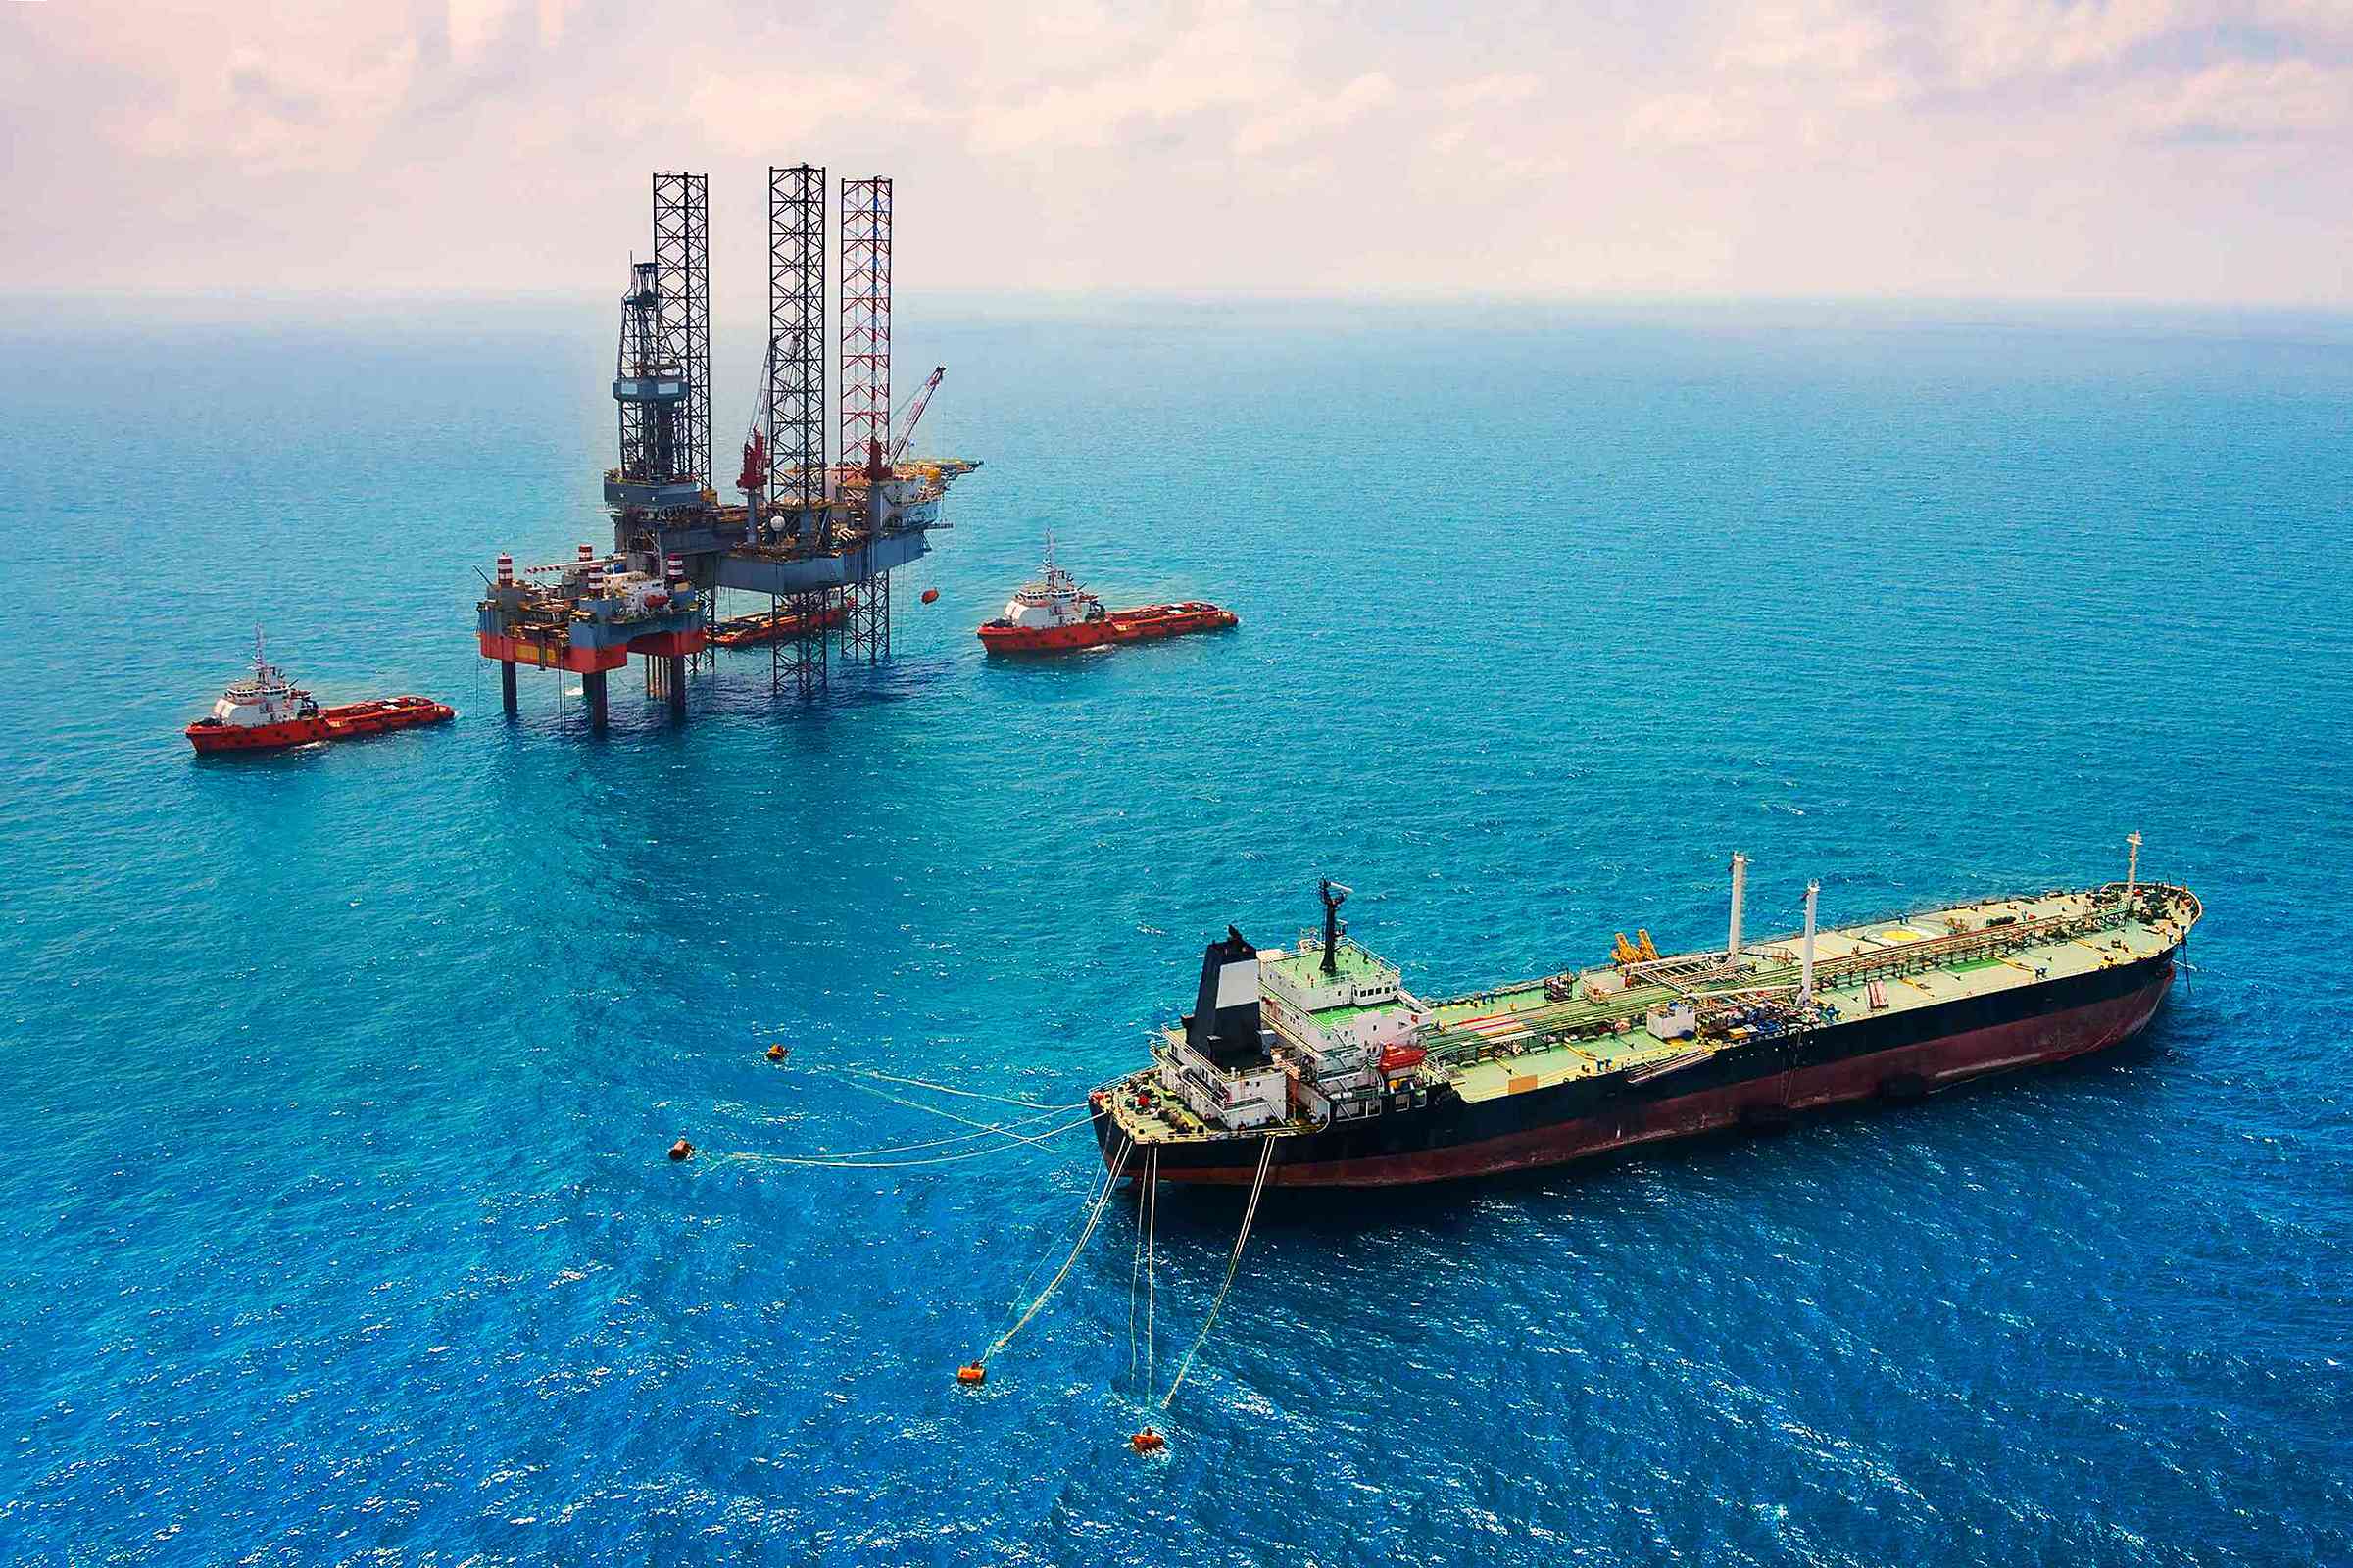 A 6ª edição do Anuário da Indústria do Petróleo e Gás Natural no ES aponta para um forte crescimento do mercado de petróleo offshore no Espírito Santo. A expectativa é de R$ 8,8 bilhões até 2027 em investimentos na expansão da produção no estado.